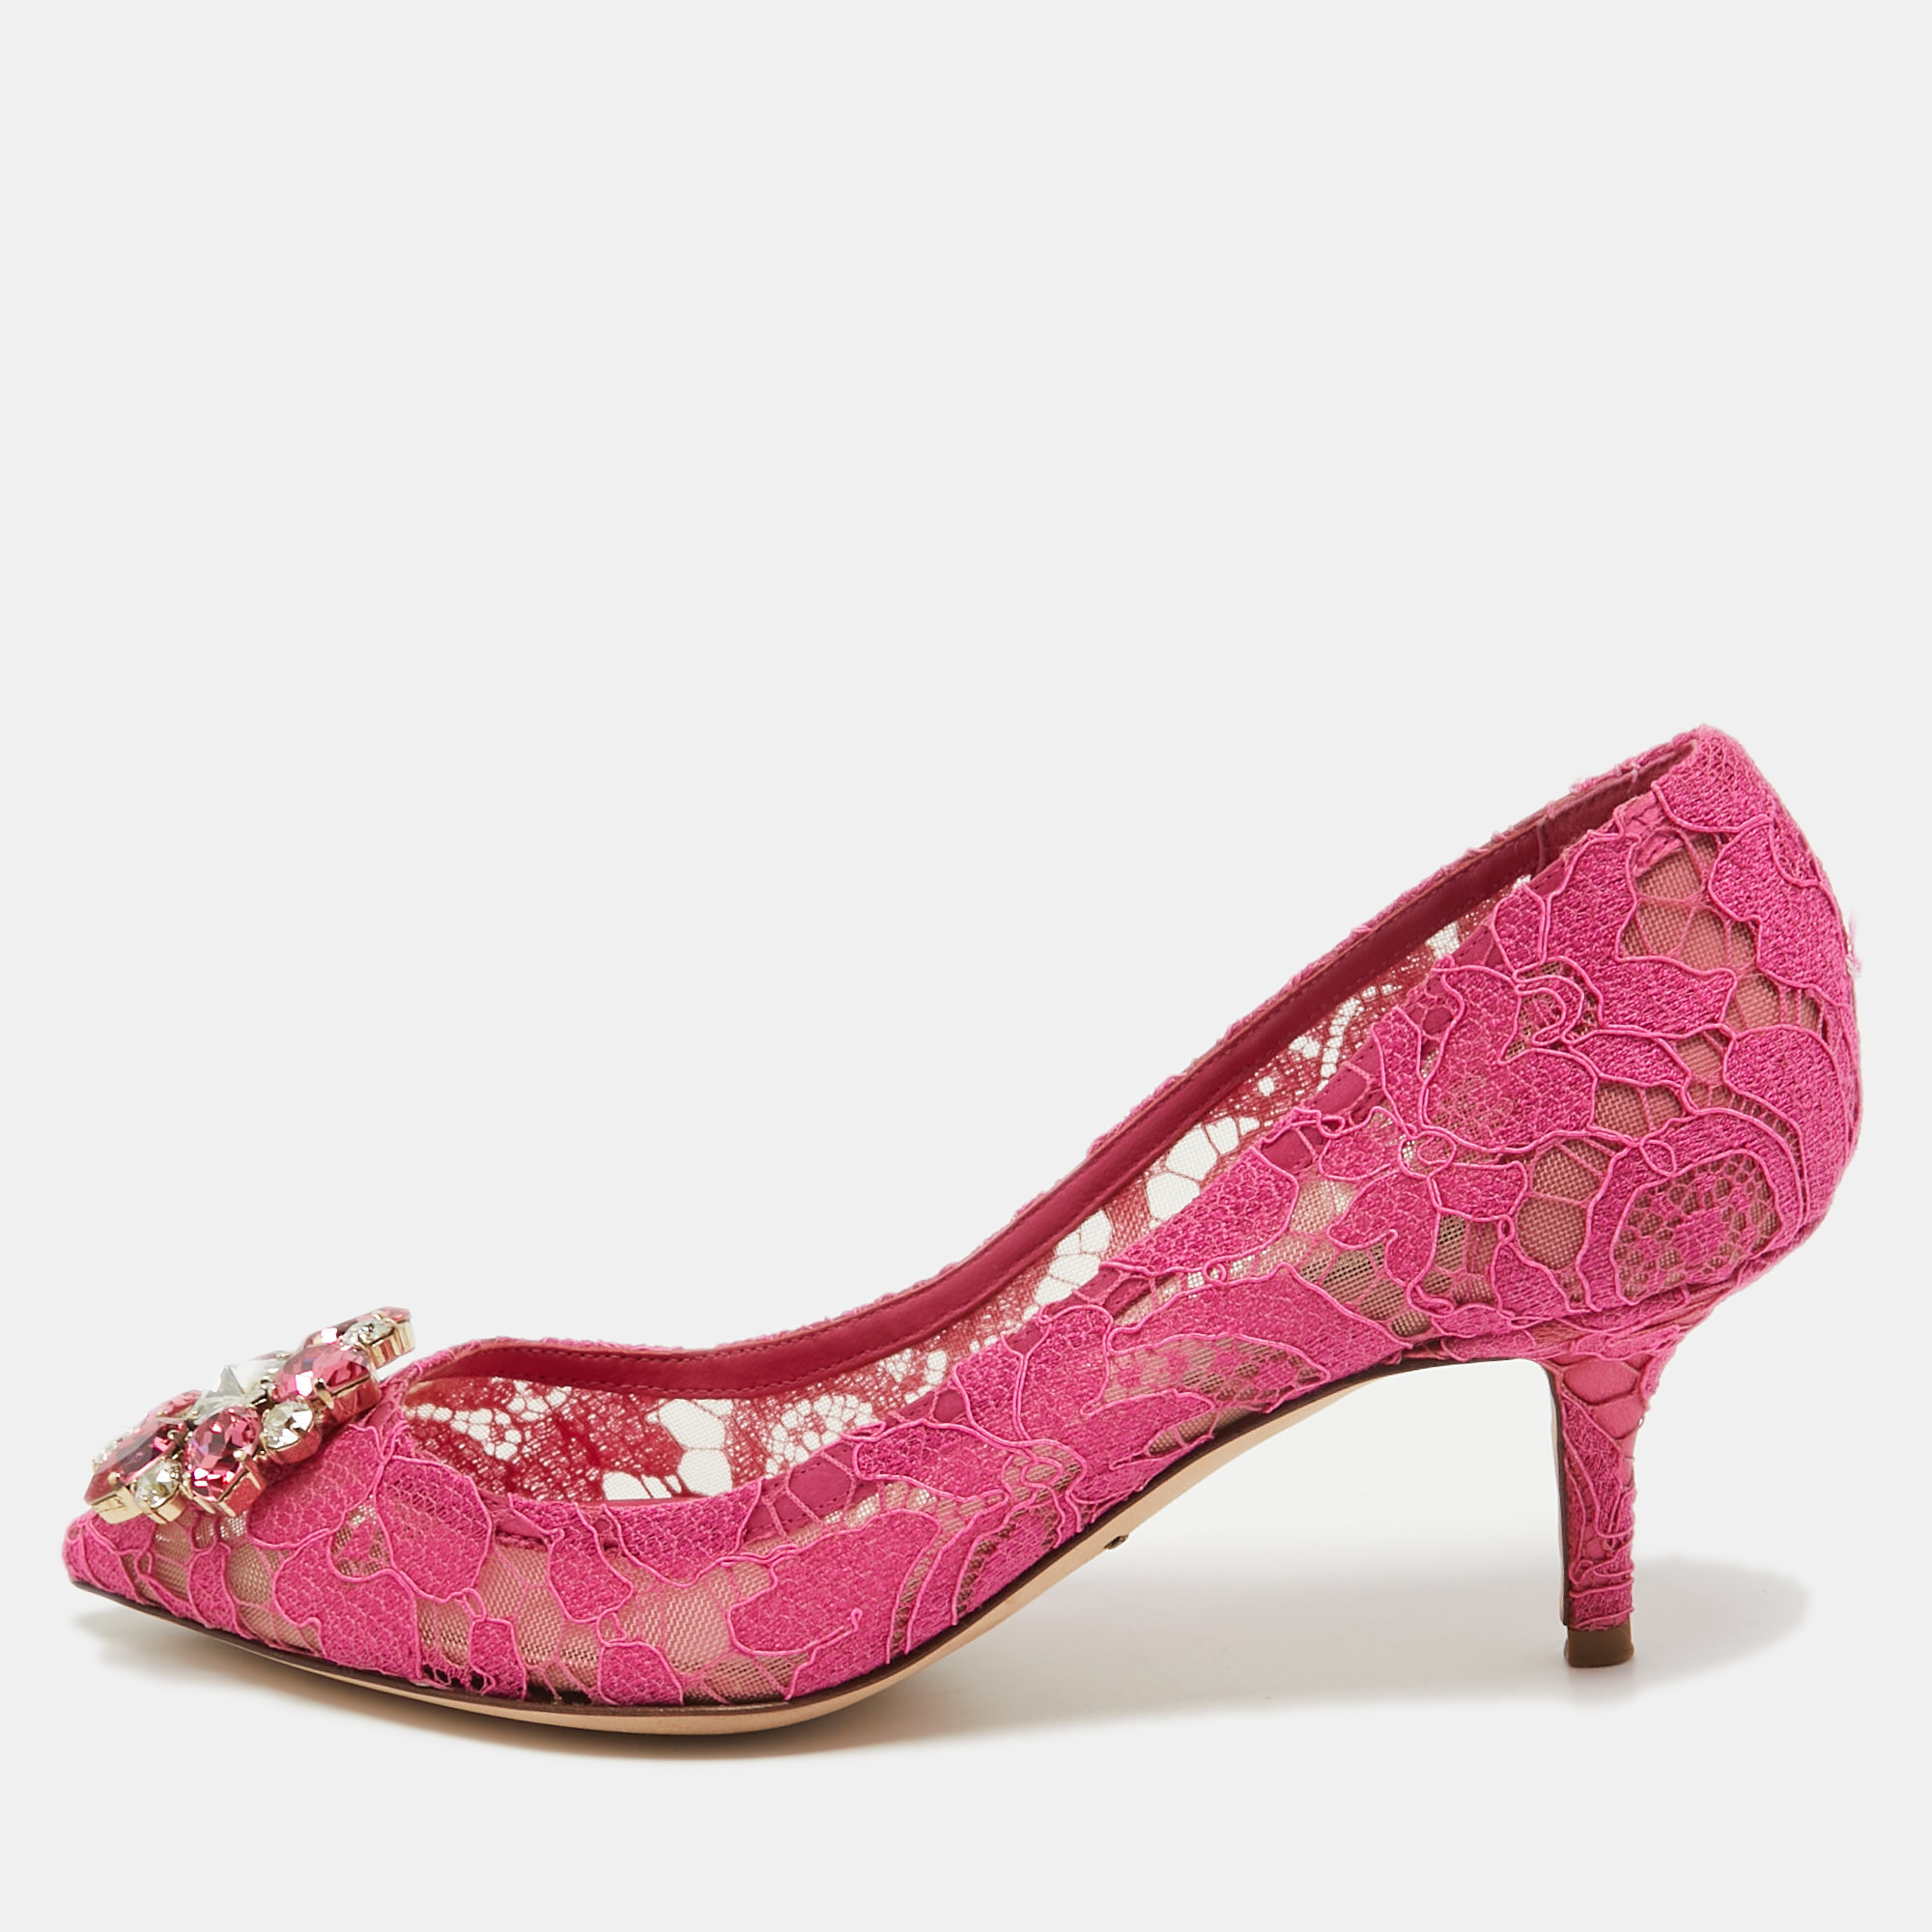 Dolce & Gabbana Fuchsia Pink Lace Bellucci Pumps Size 39